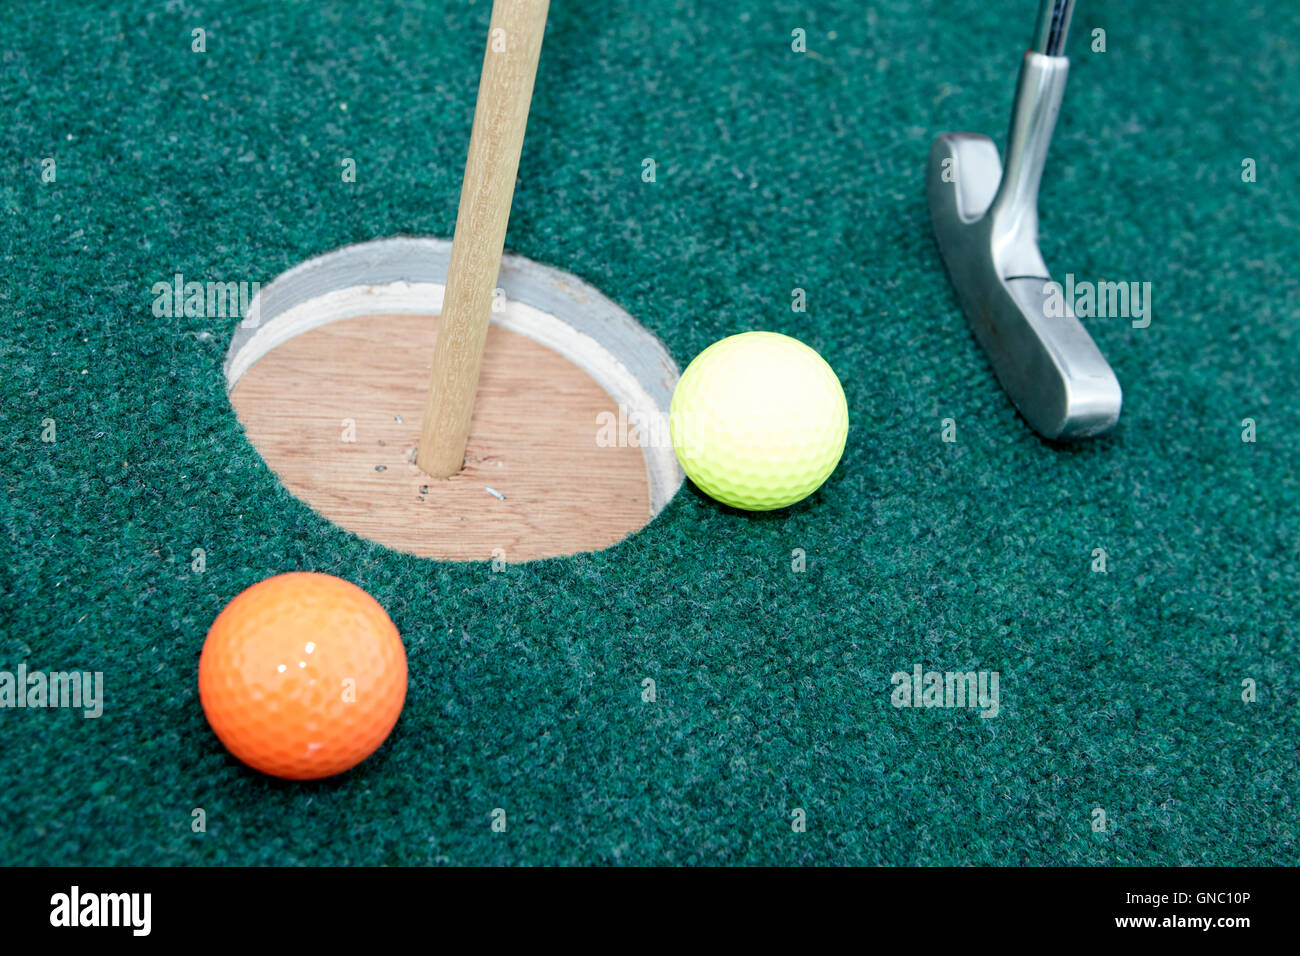 Boules et putter sur accueil rendu fou trou de golf Banque D'Images